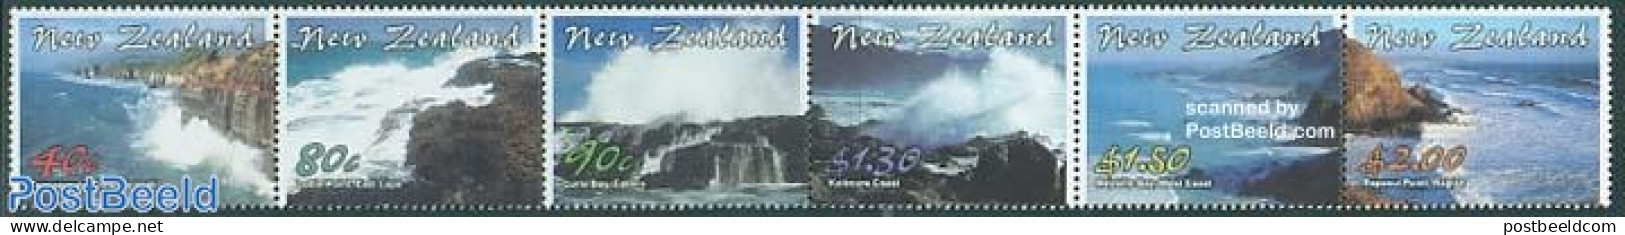 New Zealand 2002 Landscapes 6v [:::::], Mint NH - Unused Stamps